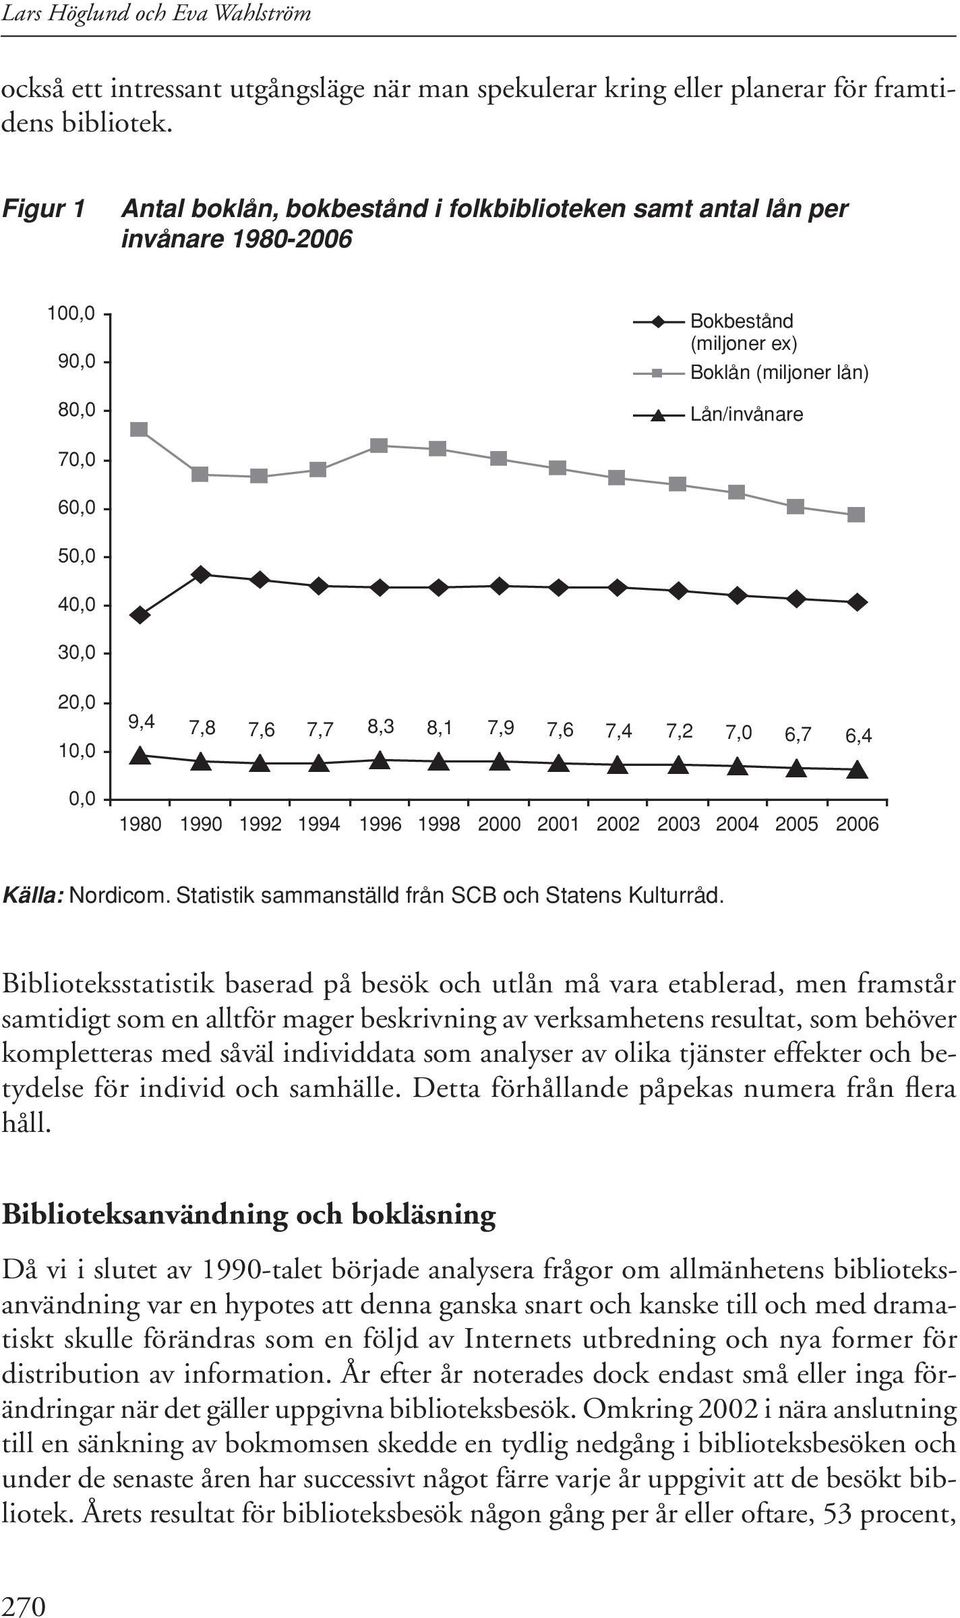 0,0 9,4 7,8 7,6 7,7 8,3 8,1 7,9 7,6 7,4 7,2 7,0 6,7 6,4 1980 1990 1992 1994 1996 1998 2000 2001 2002 2003 2004 2005 2006 Källa: Nordicom. Statistik sammanställd från SCB och Statens Kulturråd.